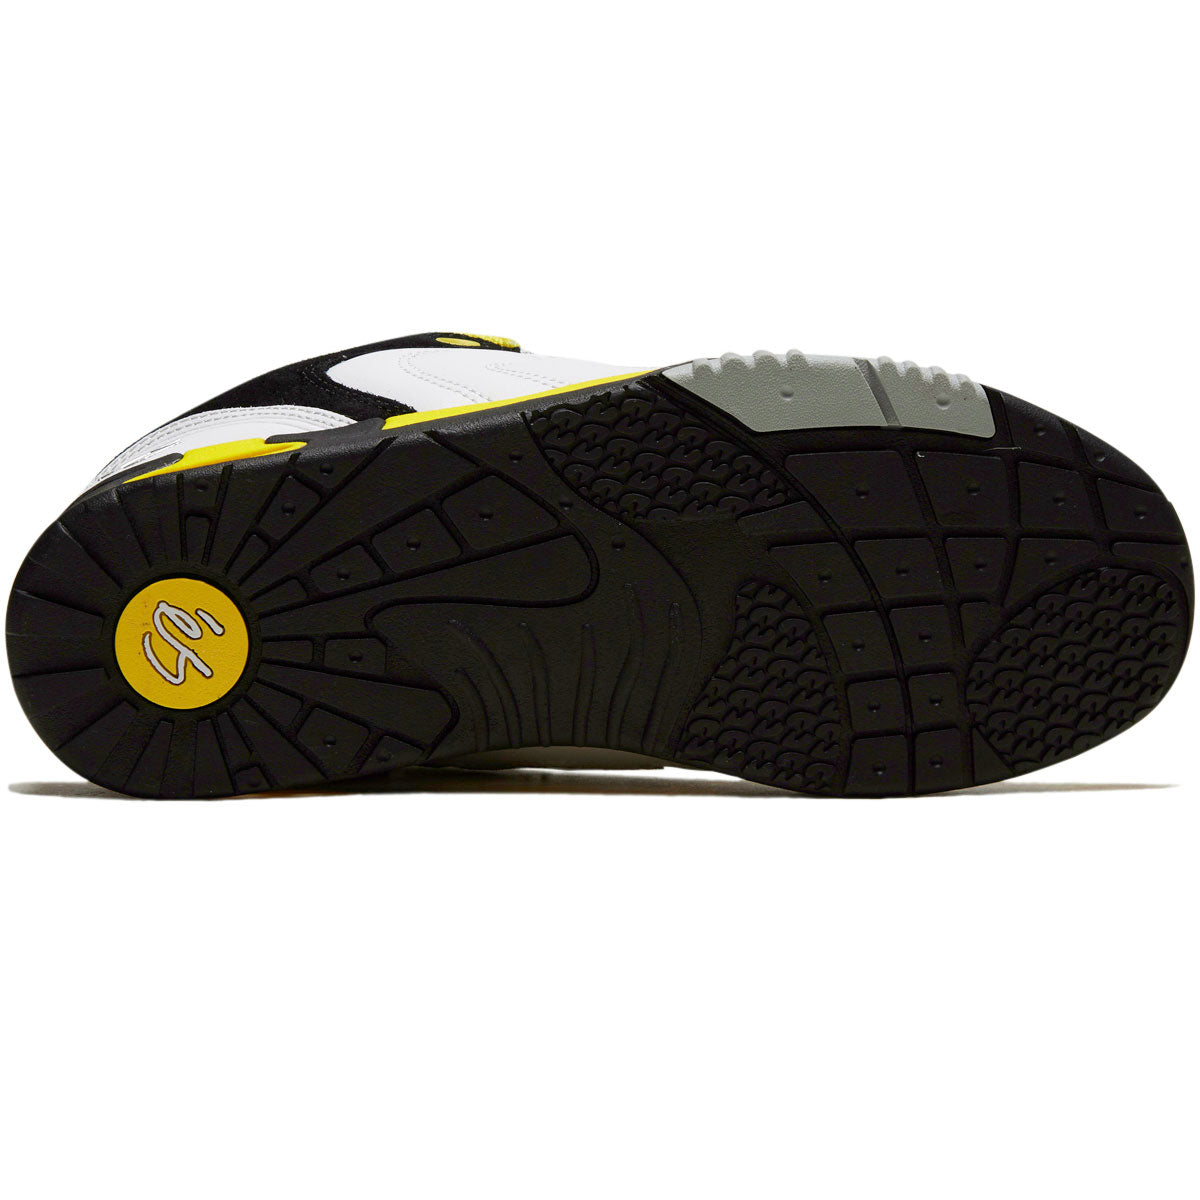 eS x Chomp On Kicks Tribo x Vireo Shoes - White/Black/Yellow image 4